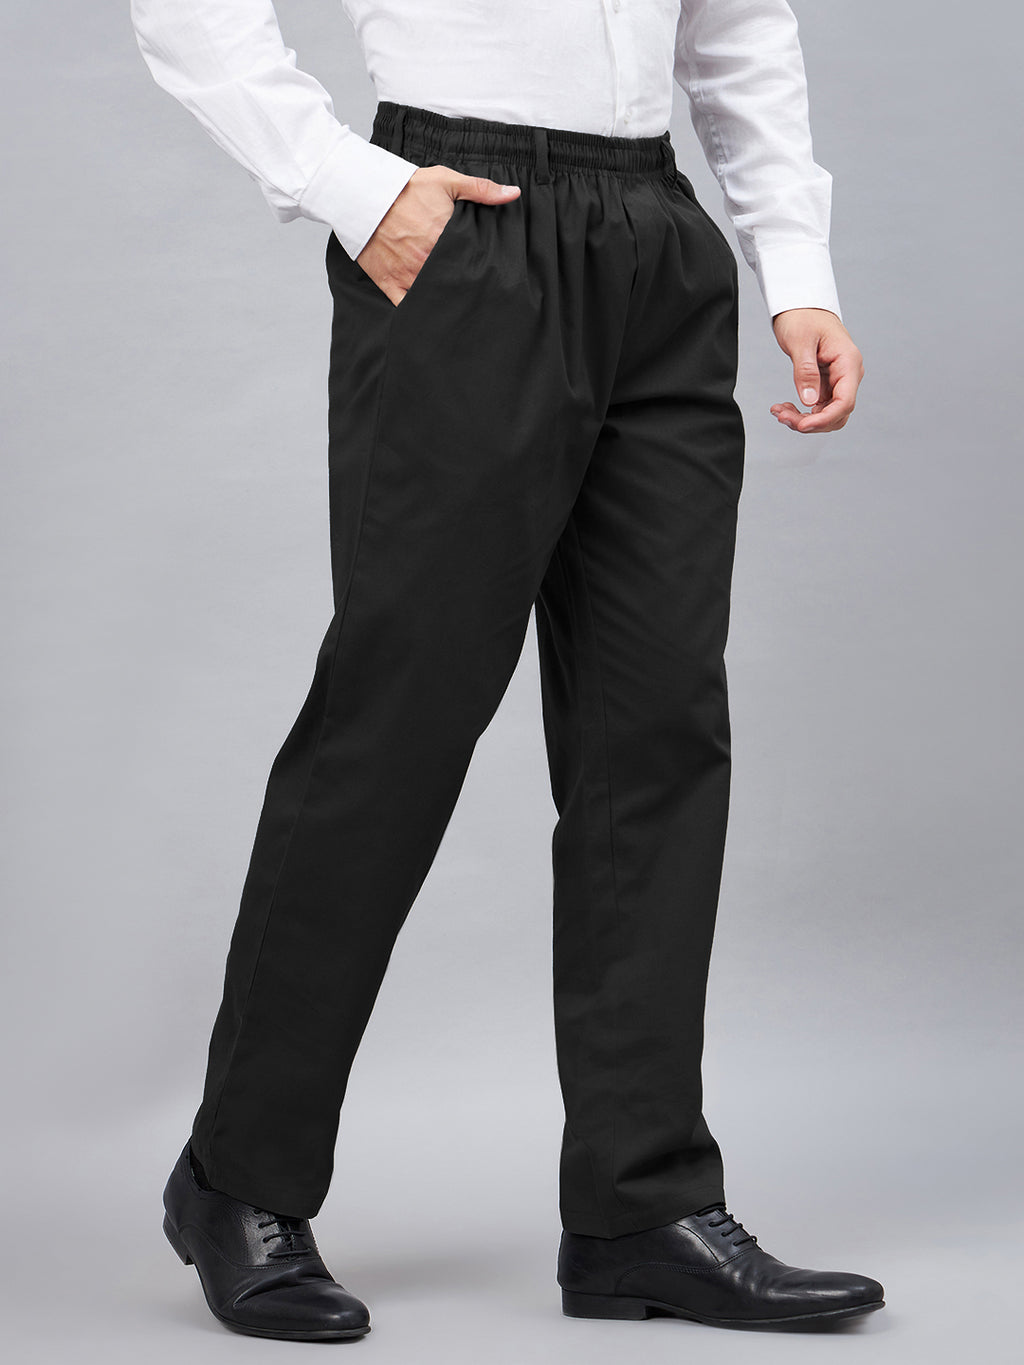 Buy Mens Black Elastic Waist Pants For Seniors Online  HAXOR